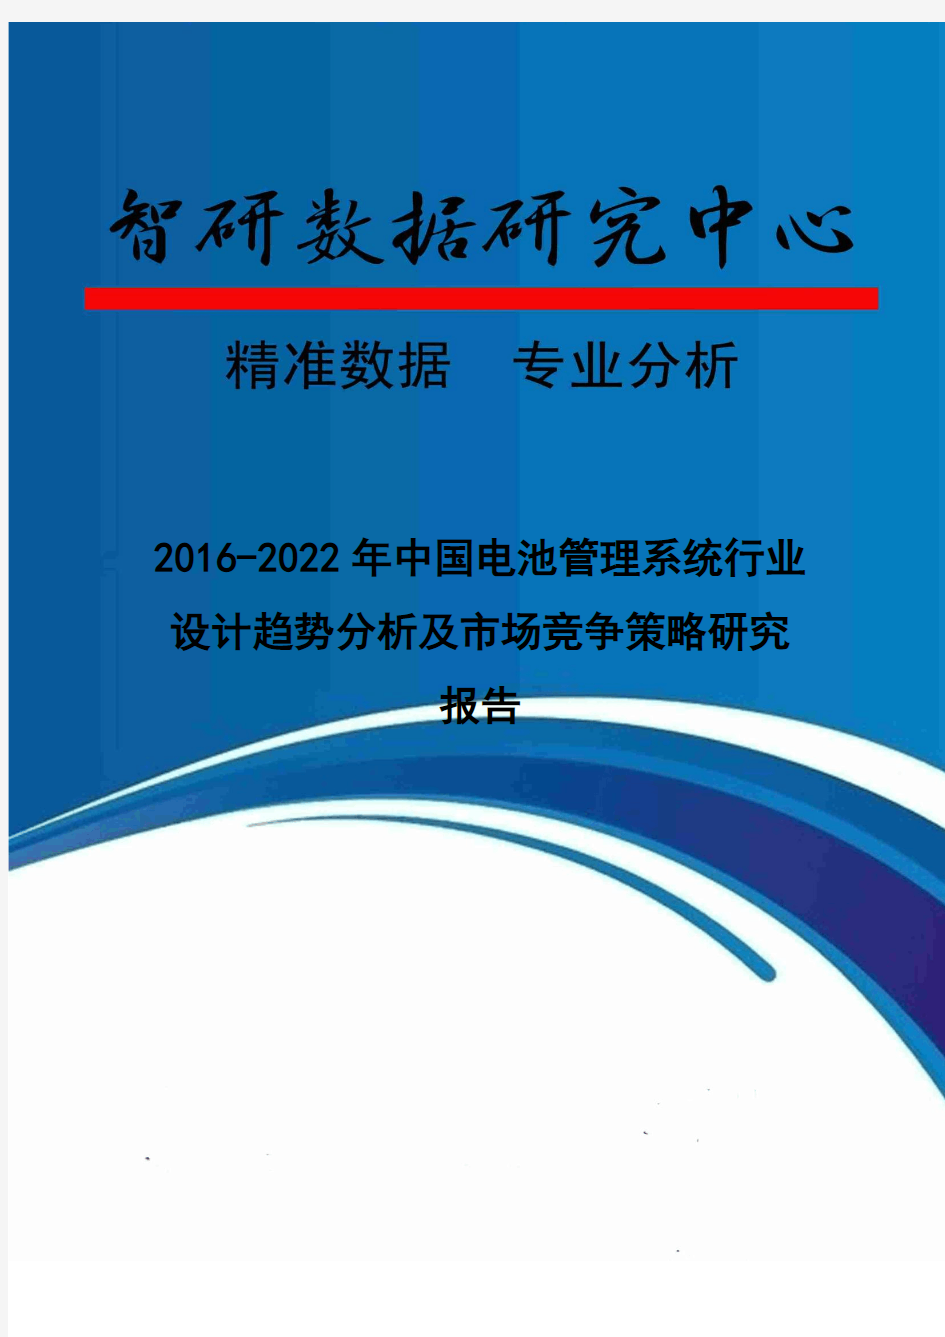 2016-2022年中国电池管理系统行业设计趋势分析及市场竞争策略研究报告